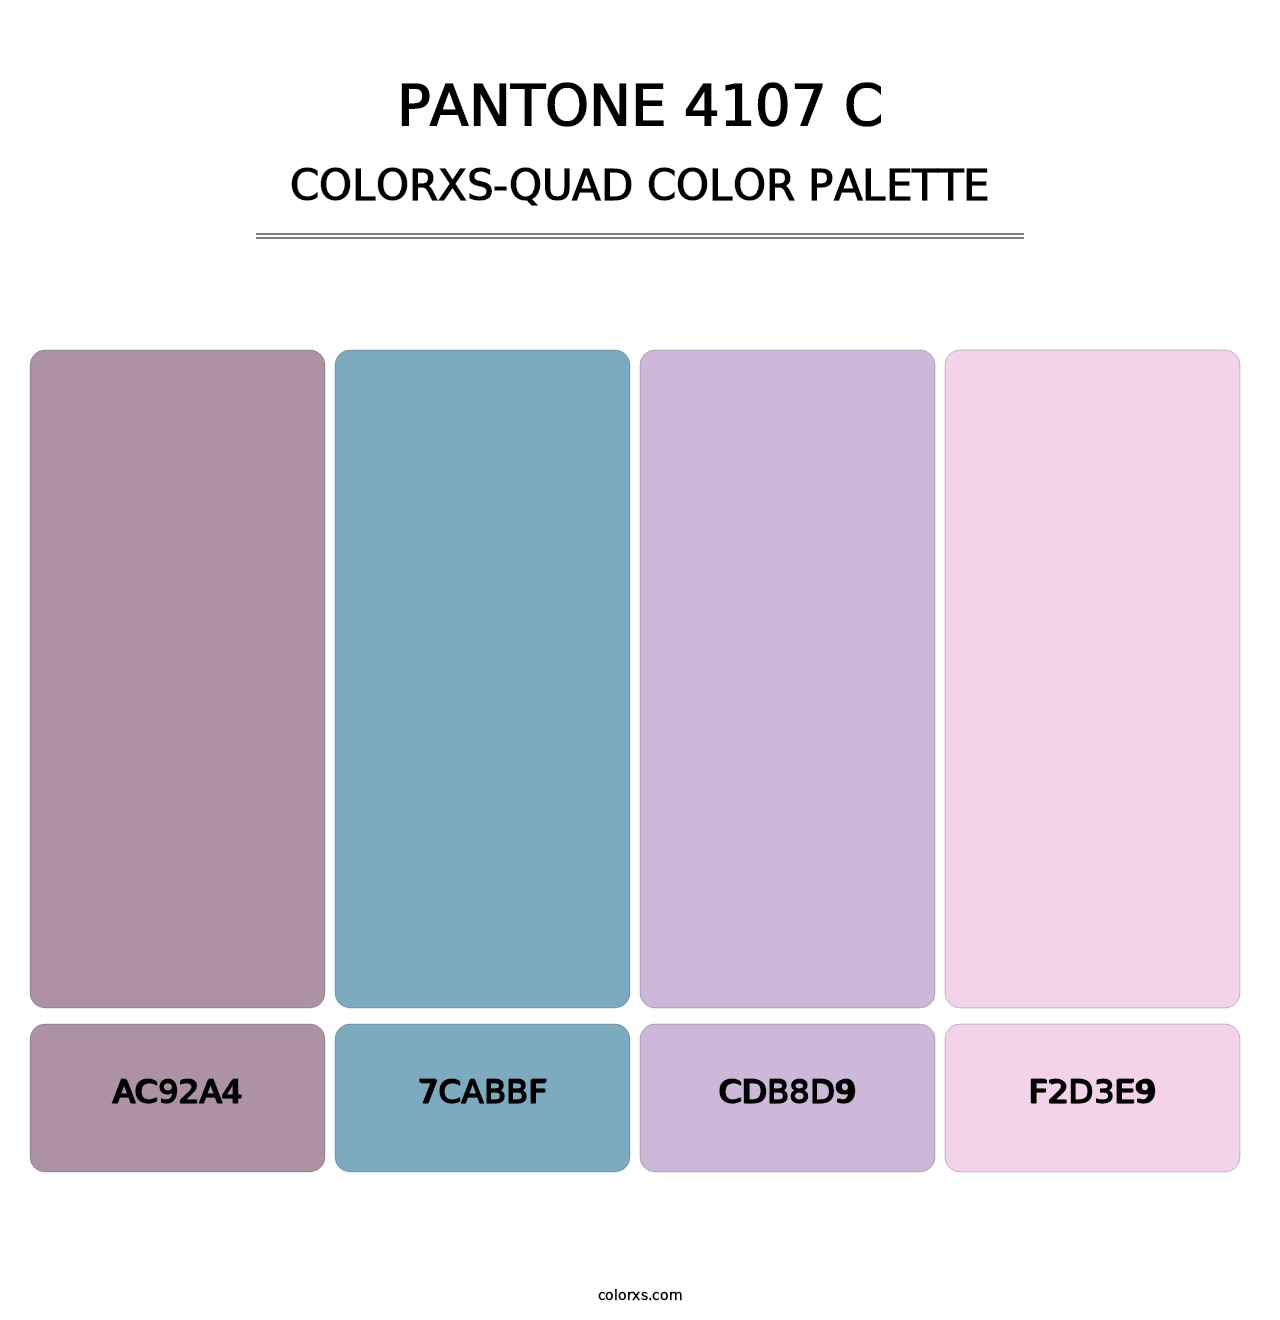 PANTONE 4107 C - Colorxs Quad Palette